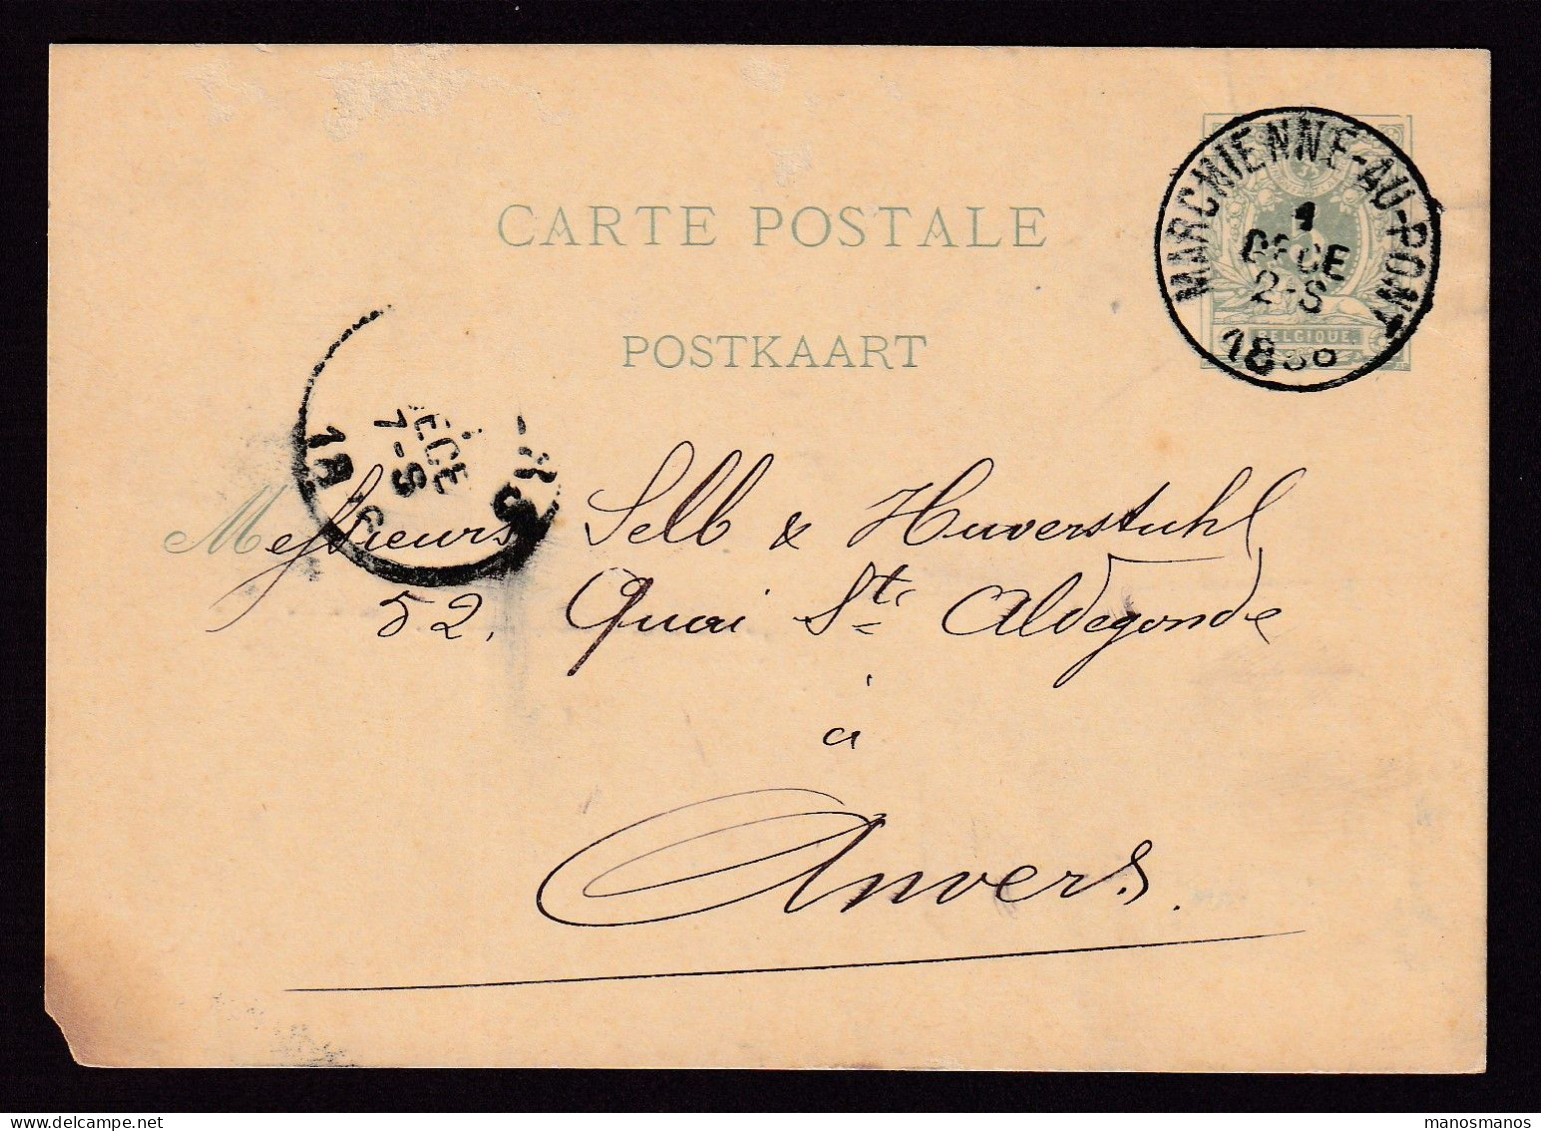 DDFF 529 - Entier Lion Couché MARCHIENNE AU PONT 1886 - Cachet S.A. Des Forges Et Laminoirs De MONCEAU Sur SAMBRE - Briefkaarten 1871-1909